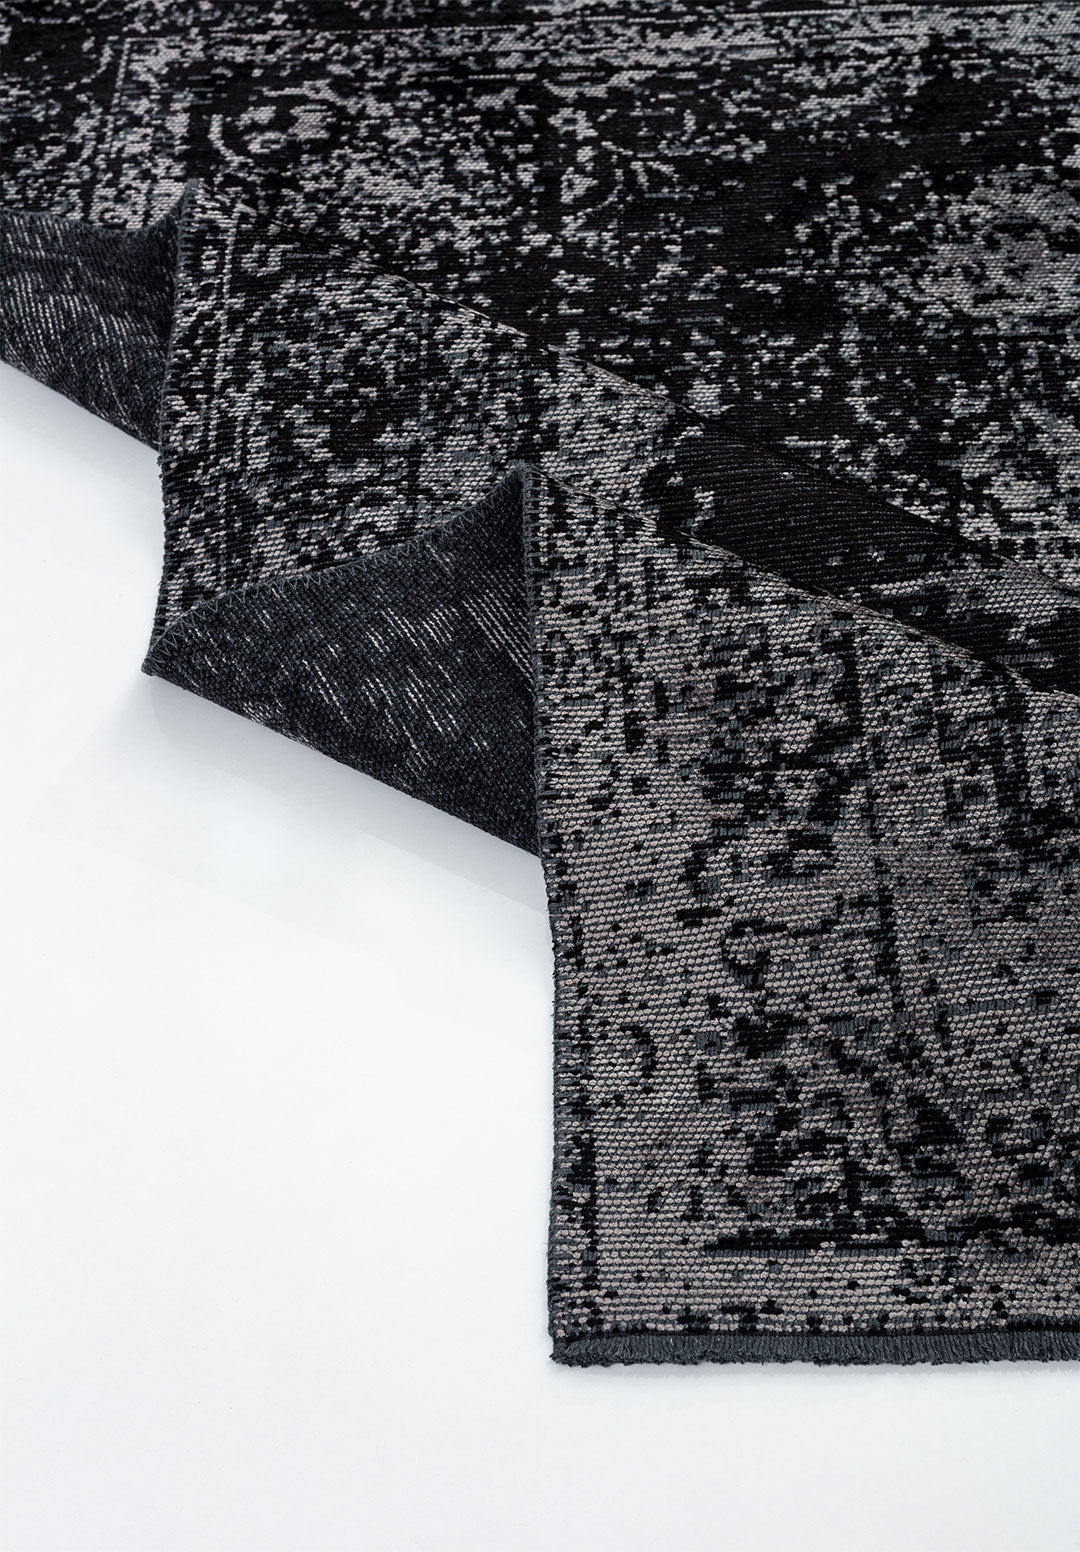 Medallion Grey - Black Rug Rugs - Venetto Design Venettodesign.com